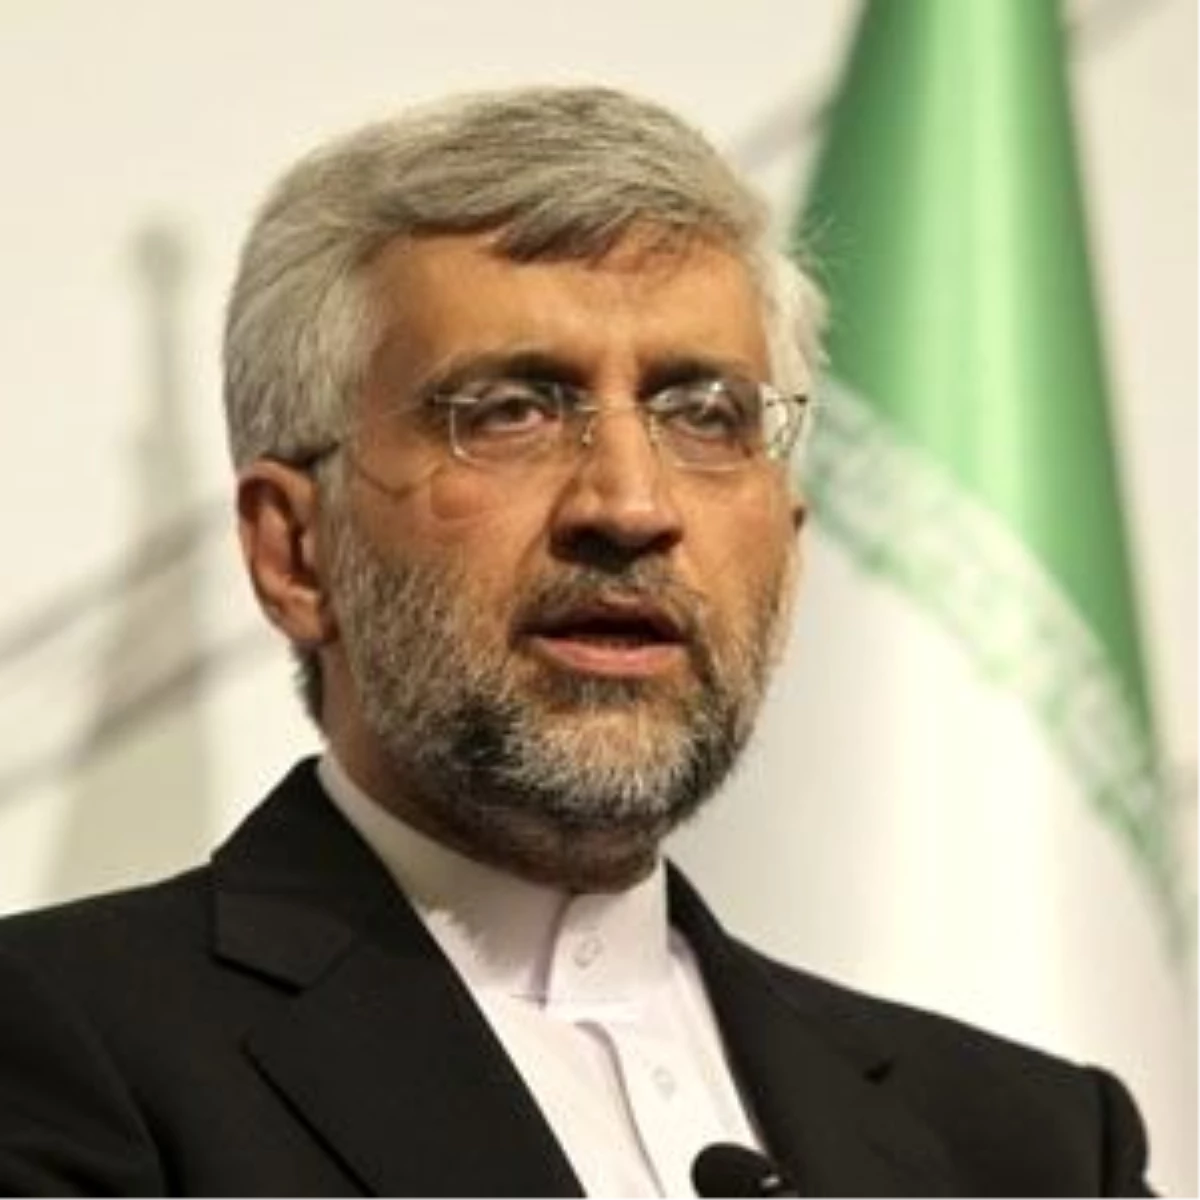 İran İslam Cumhuriyeti Milli Güvenlik Konseyi Genel Sekreteri ve Nükleer Başmüzakereci Said Celili...